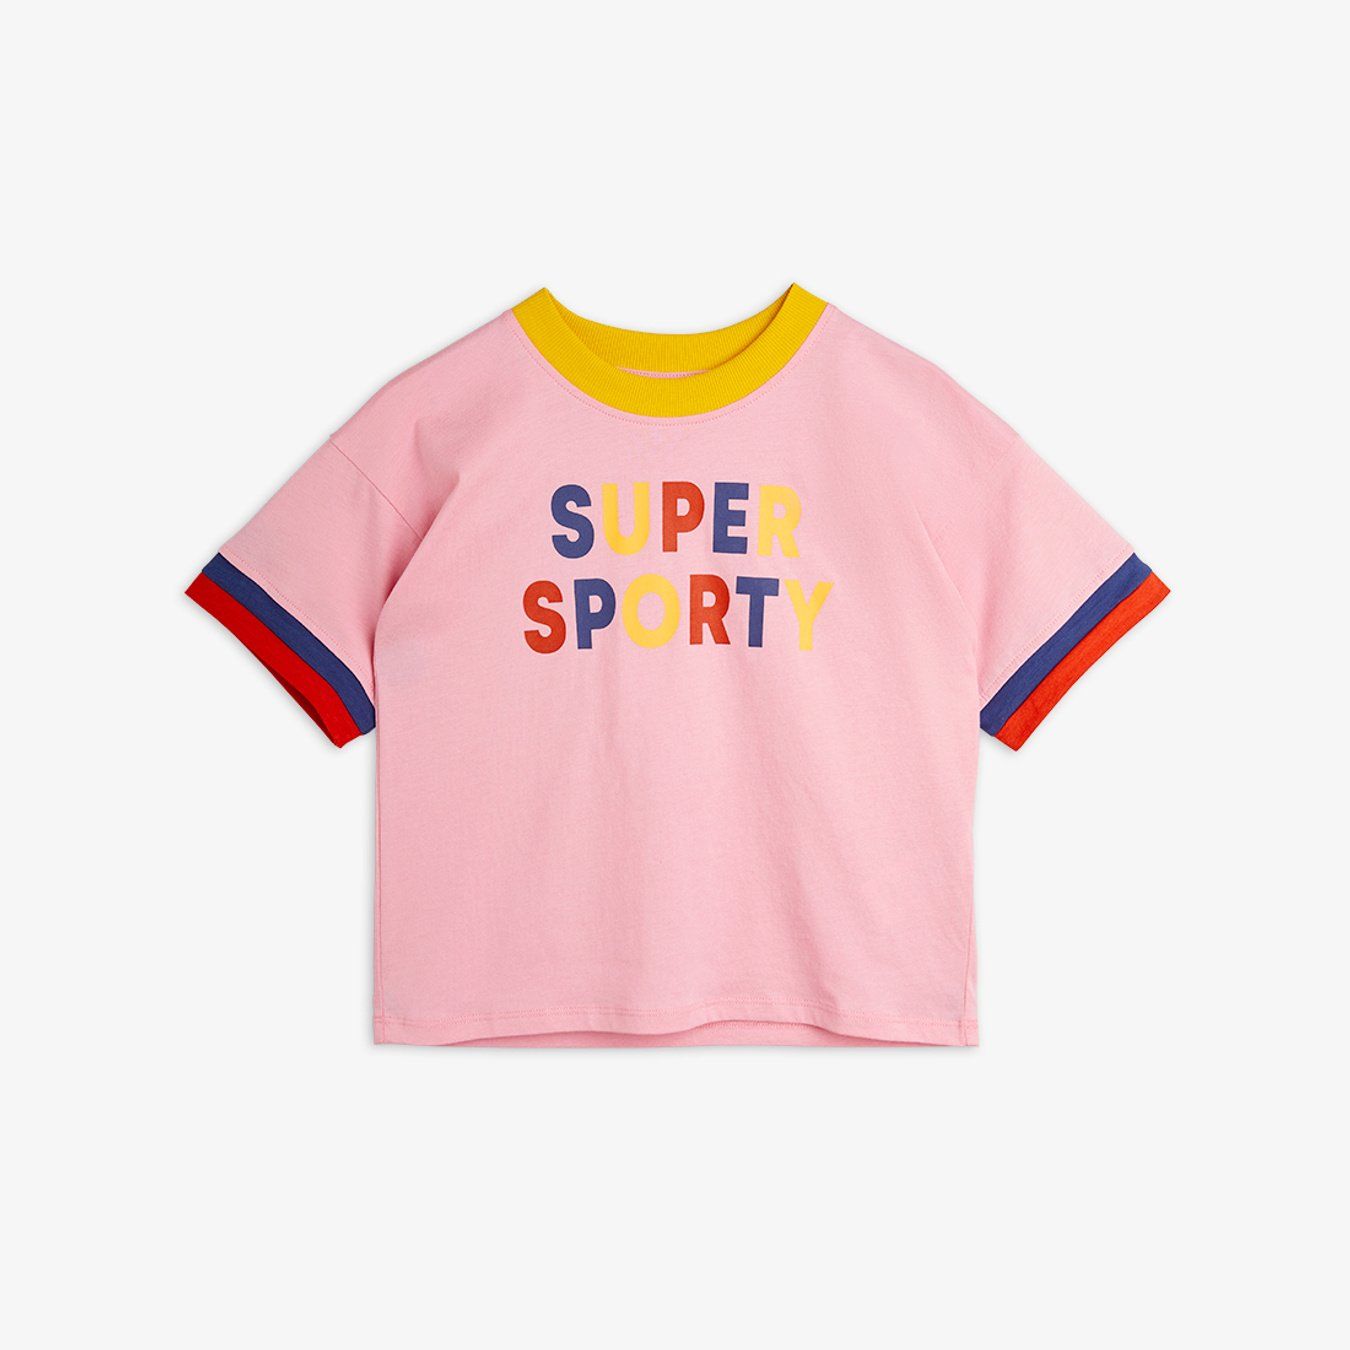 Mini Rodini - Super Sporty T-Shirt